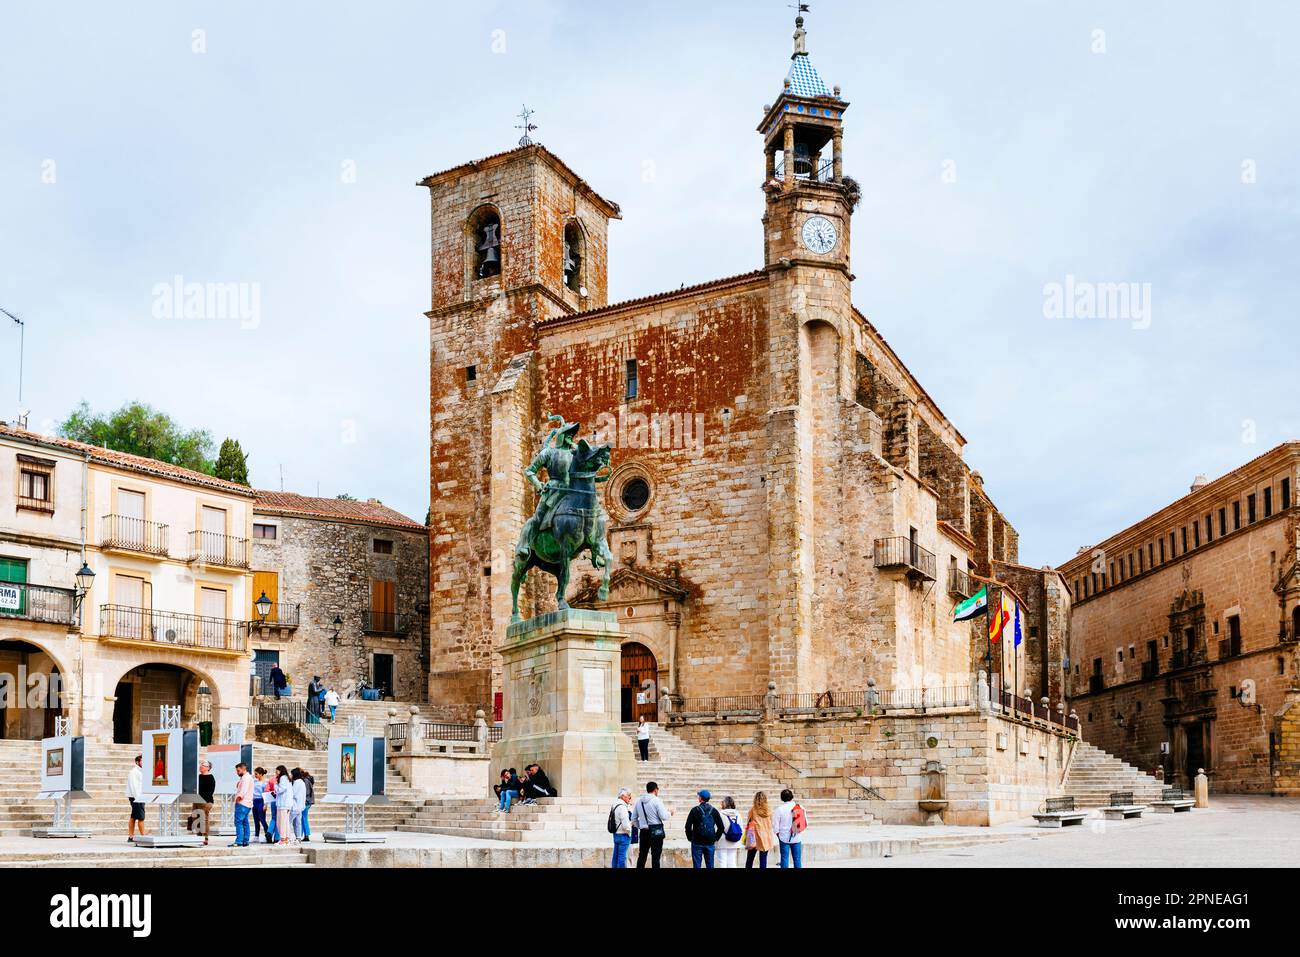 Church of San Martin, Plaza Mayor, Main Square. Trujillo, Cáceres, Extremadura, Spain, Europe Stock Photo